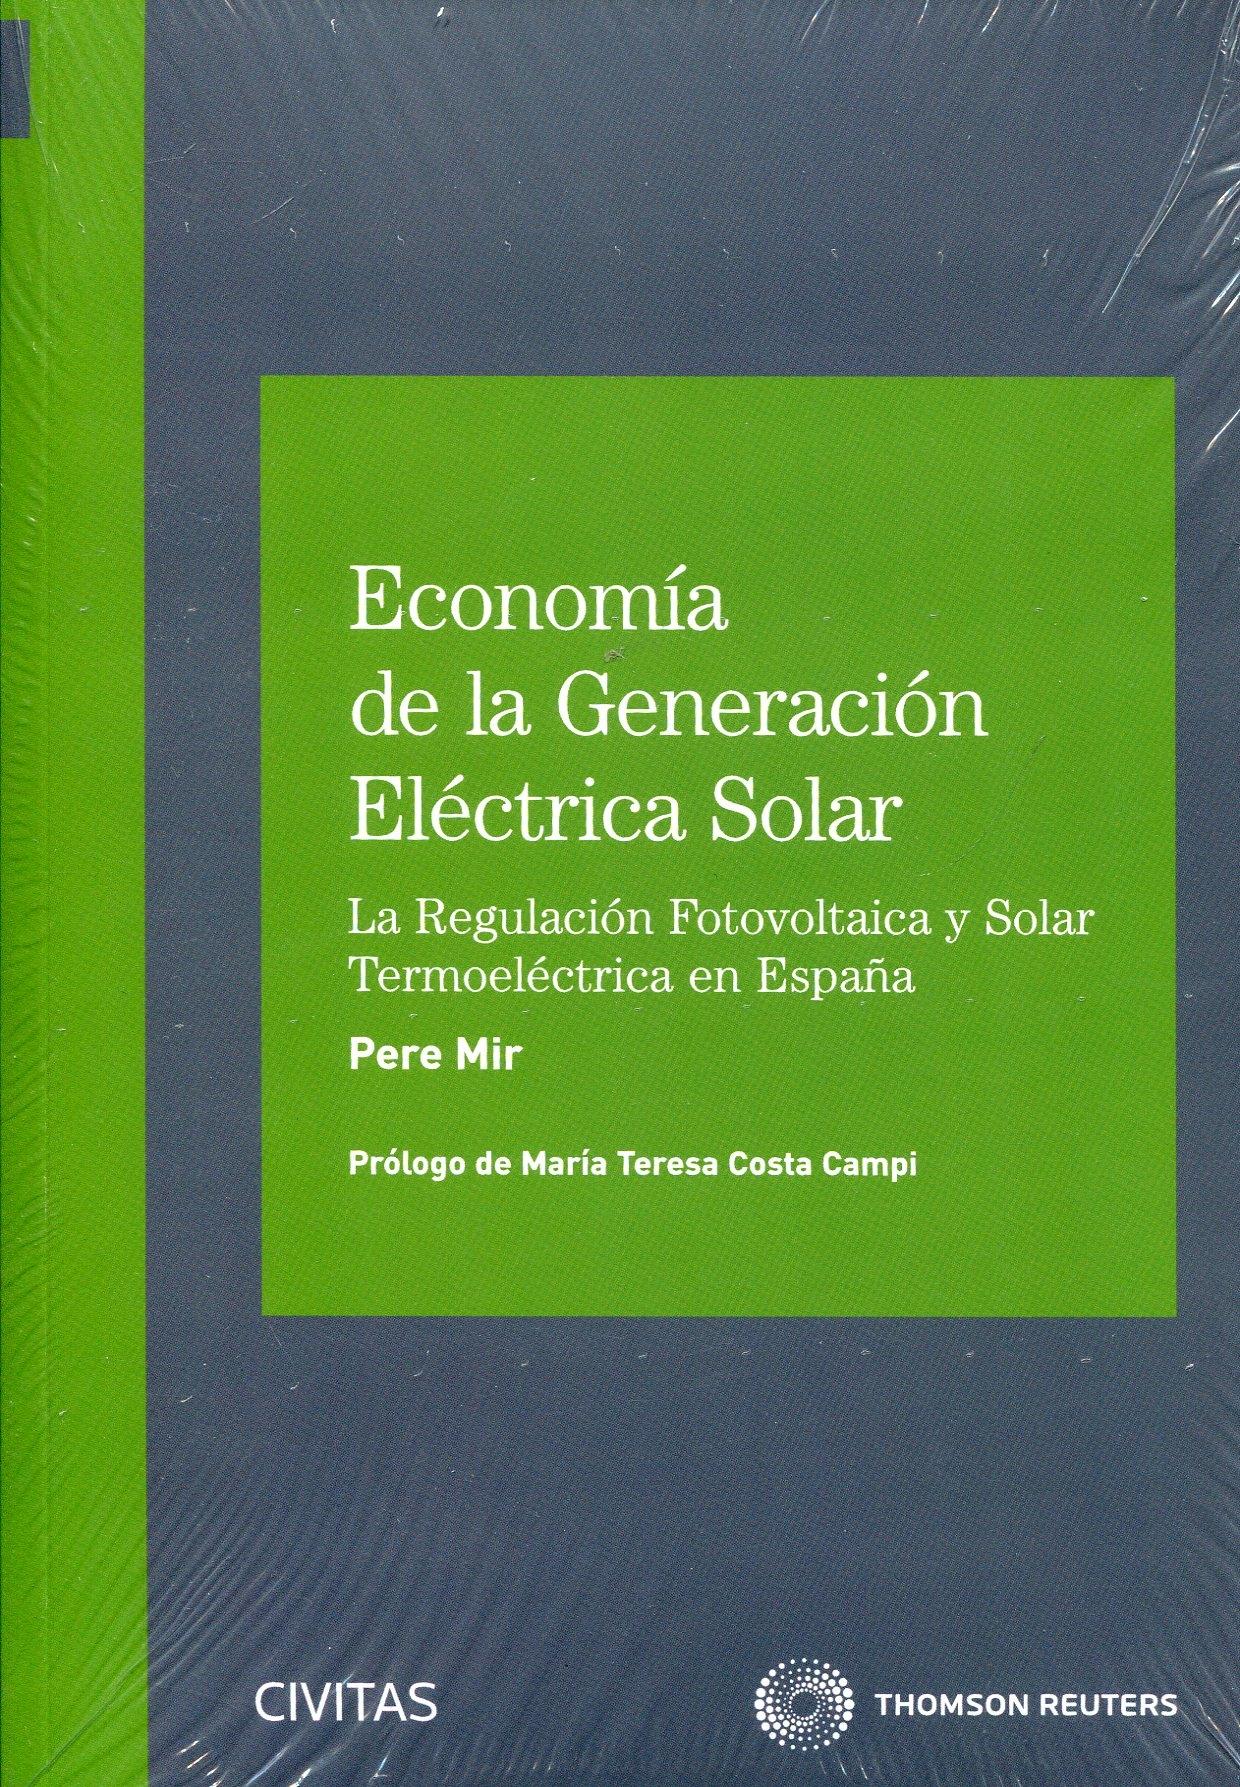 Economía de la Generación Eléctrica Solar "La regulación fotovoltaica y solar termoeléctrica en España"